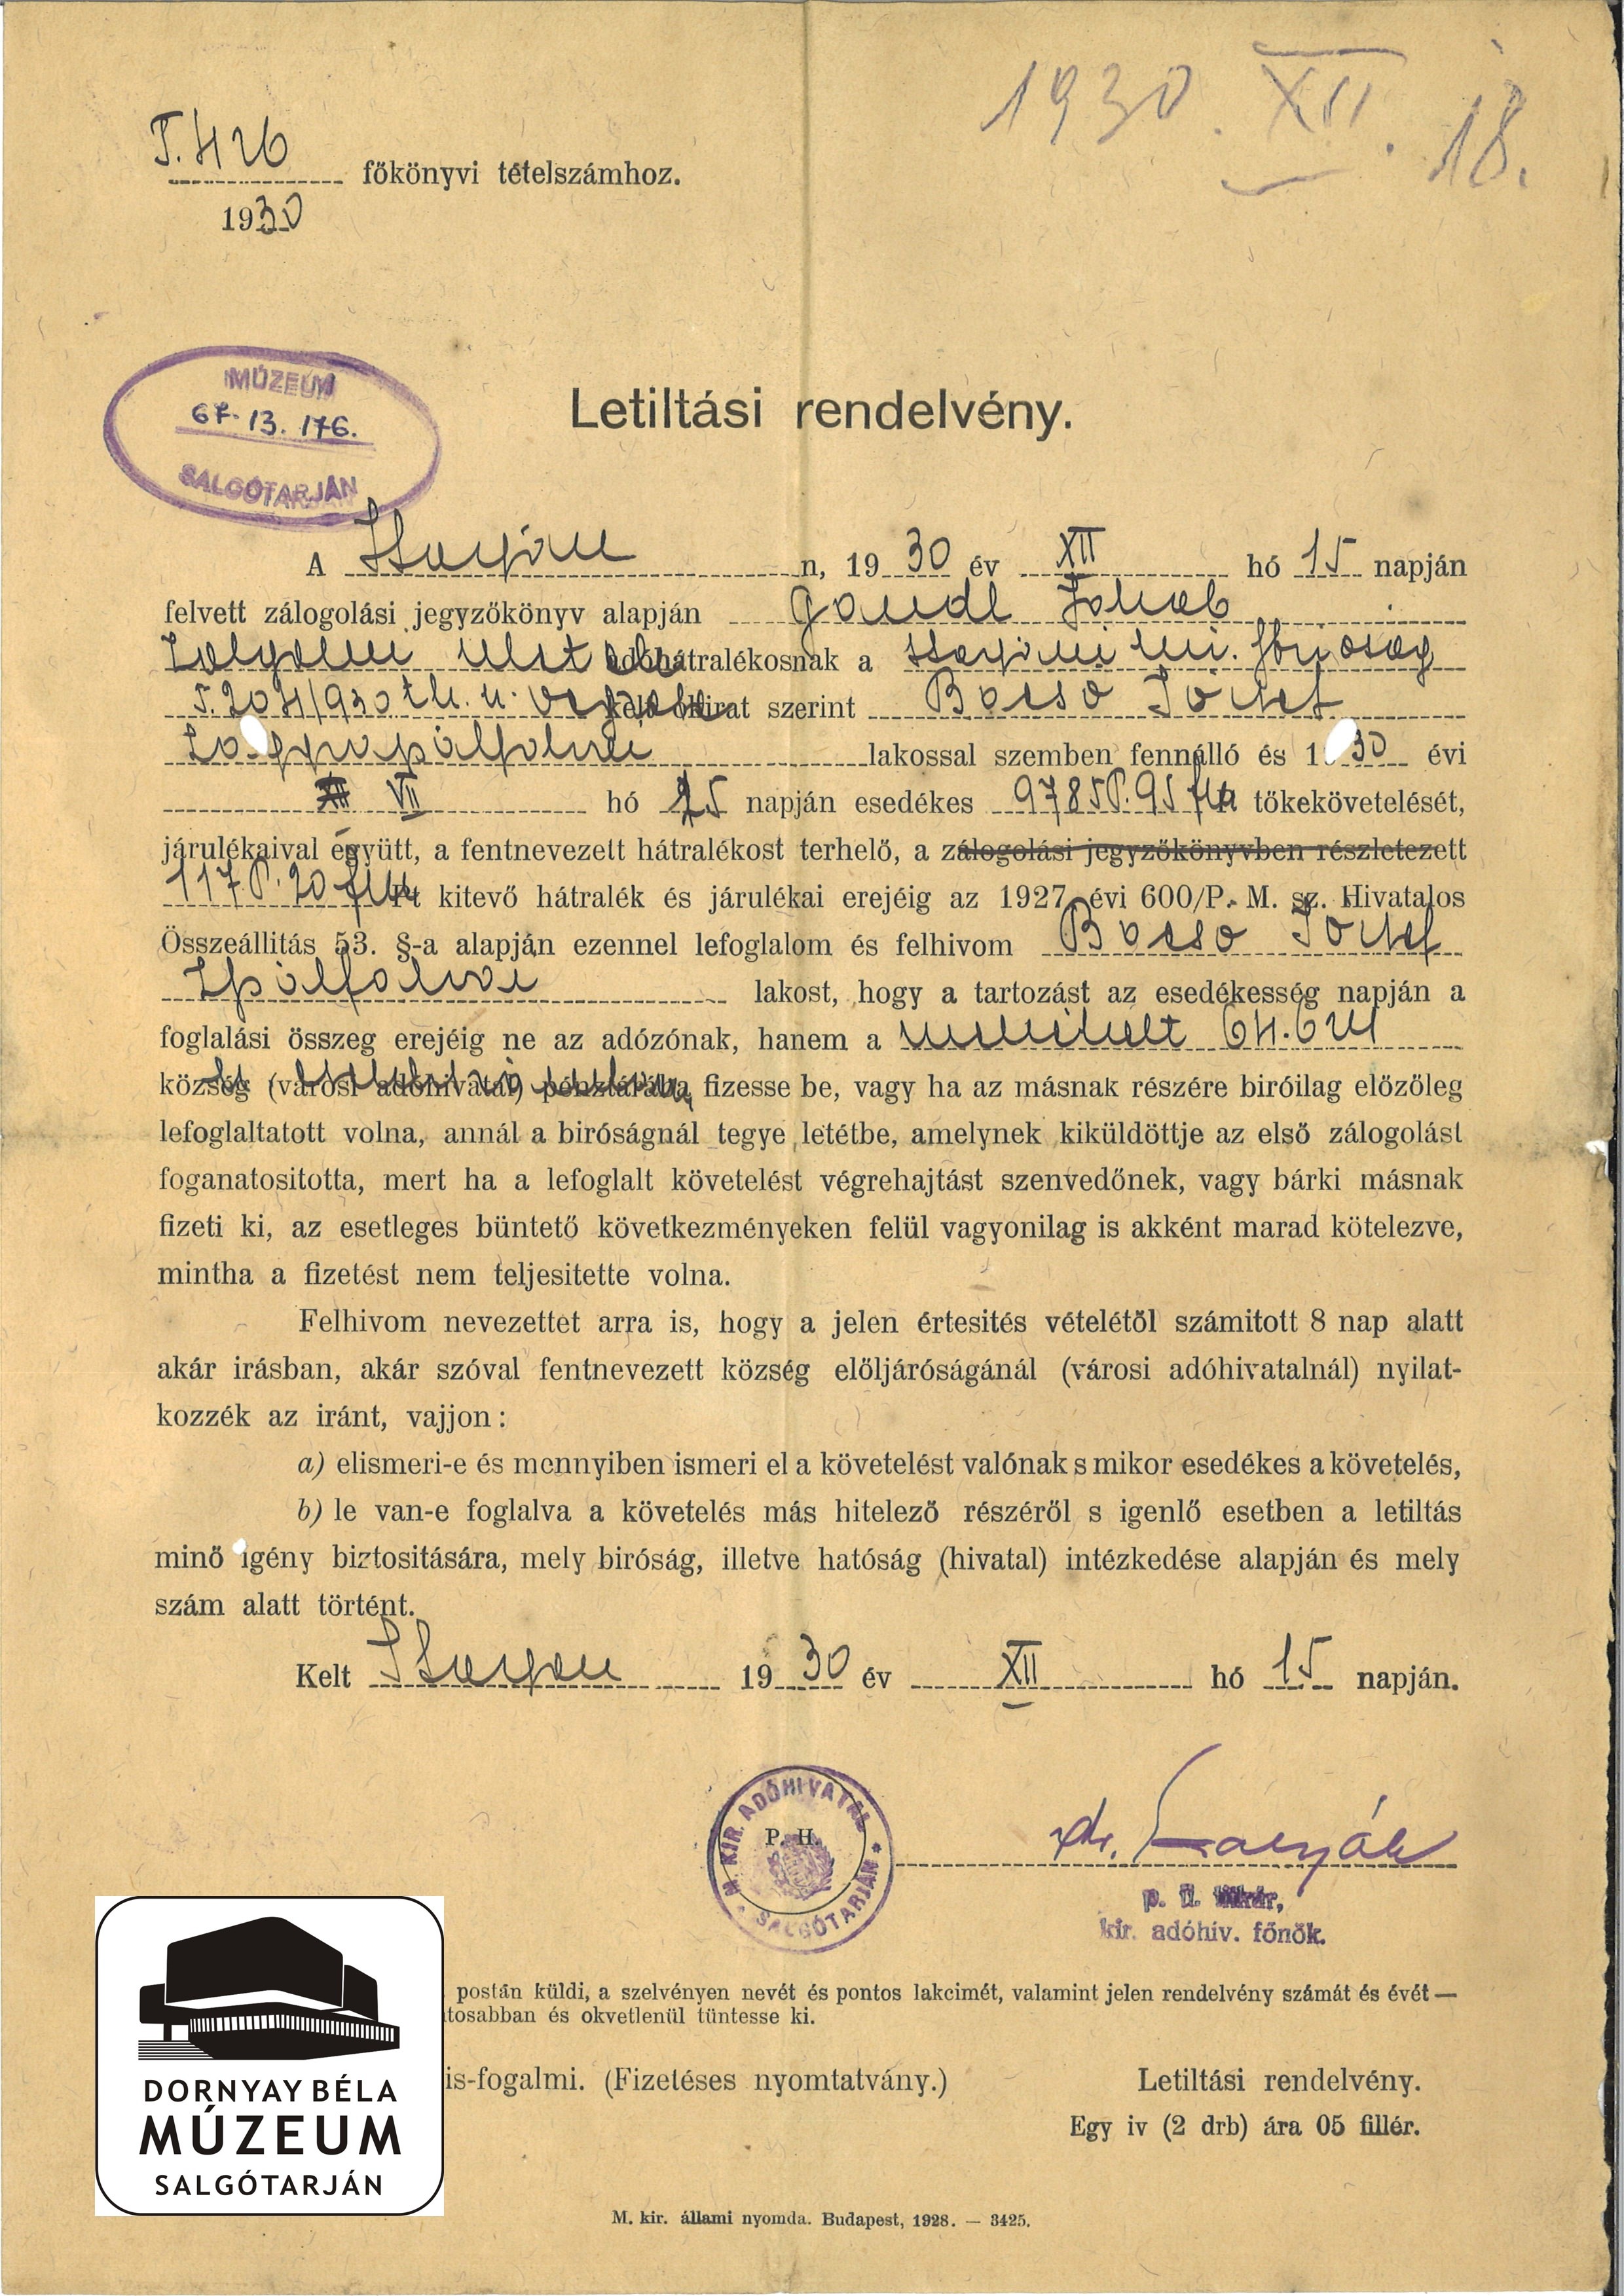 Adóhivatali letiltás, amely kötelezi Bacsó Józsefet, hogy Gandl Jakabnak fizetendő adóságát az adóhivatalnak fizesse be (Dornyay Béla Múzeum, Salgótarján CC BY-NC-SA)